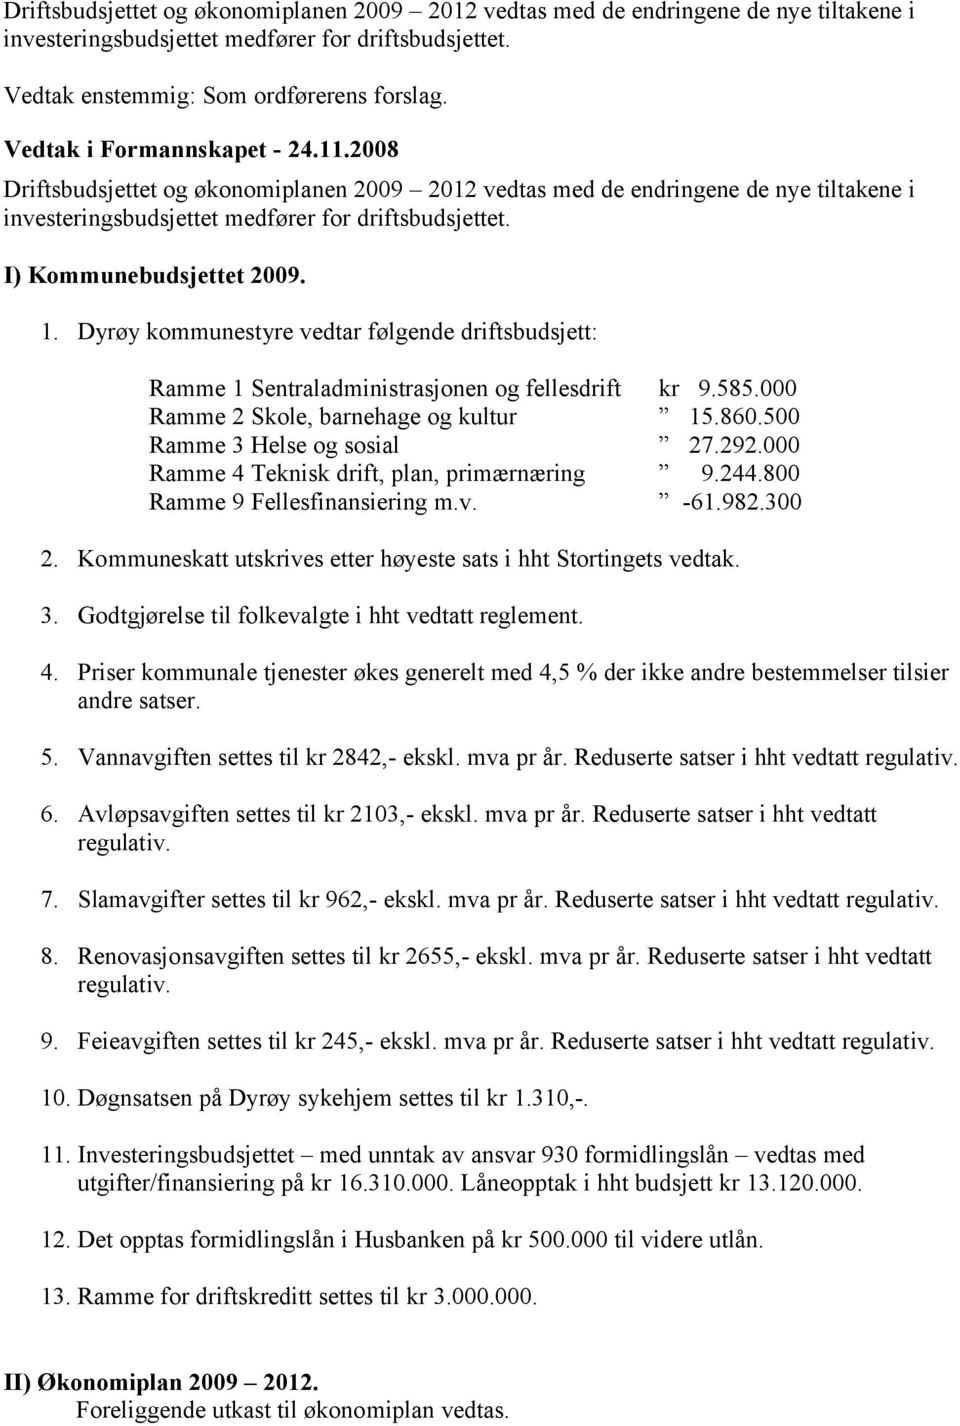 I) Kommunebudsjettet 2009. 1. Dyrøy kommunestyre vedtar følgende driftsbudsjett: Ramme 1 Sentraladministrasjonen og fellesdrift kr 9.585.000 Ramme 2 Skole, barnehage og kultur 15.860.